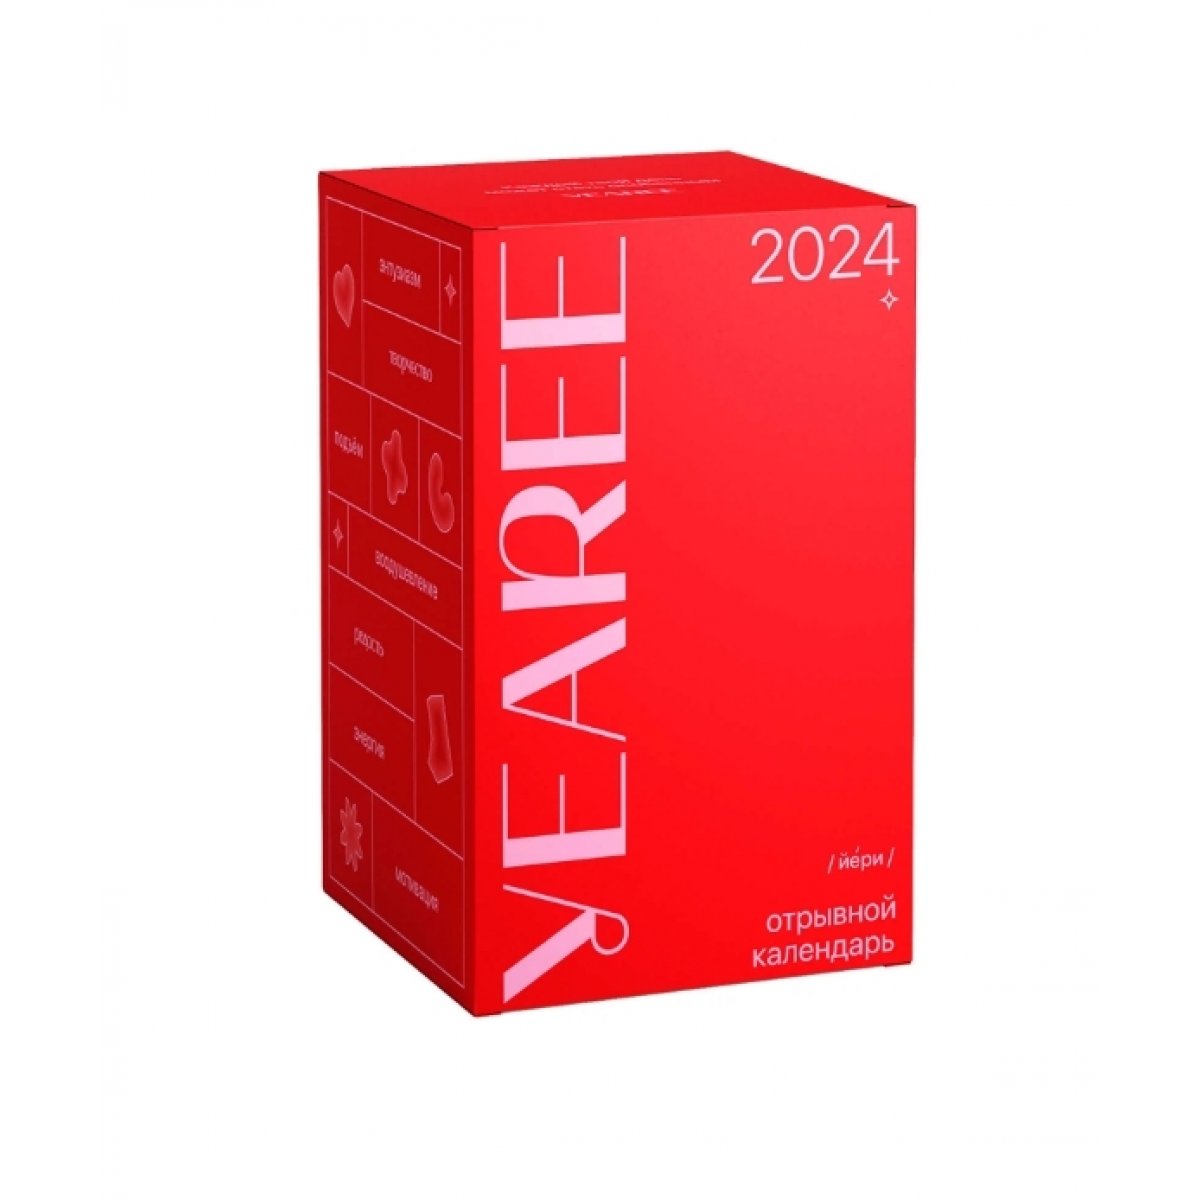 Отрывной календарь Yearee [йери] на 2024 год — купить книгу в Минске —  Biblio.by